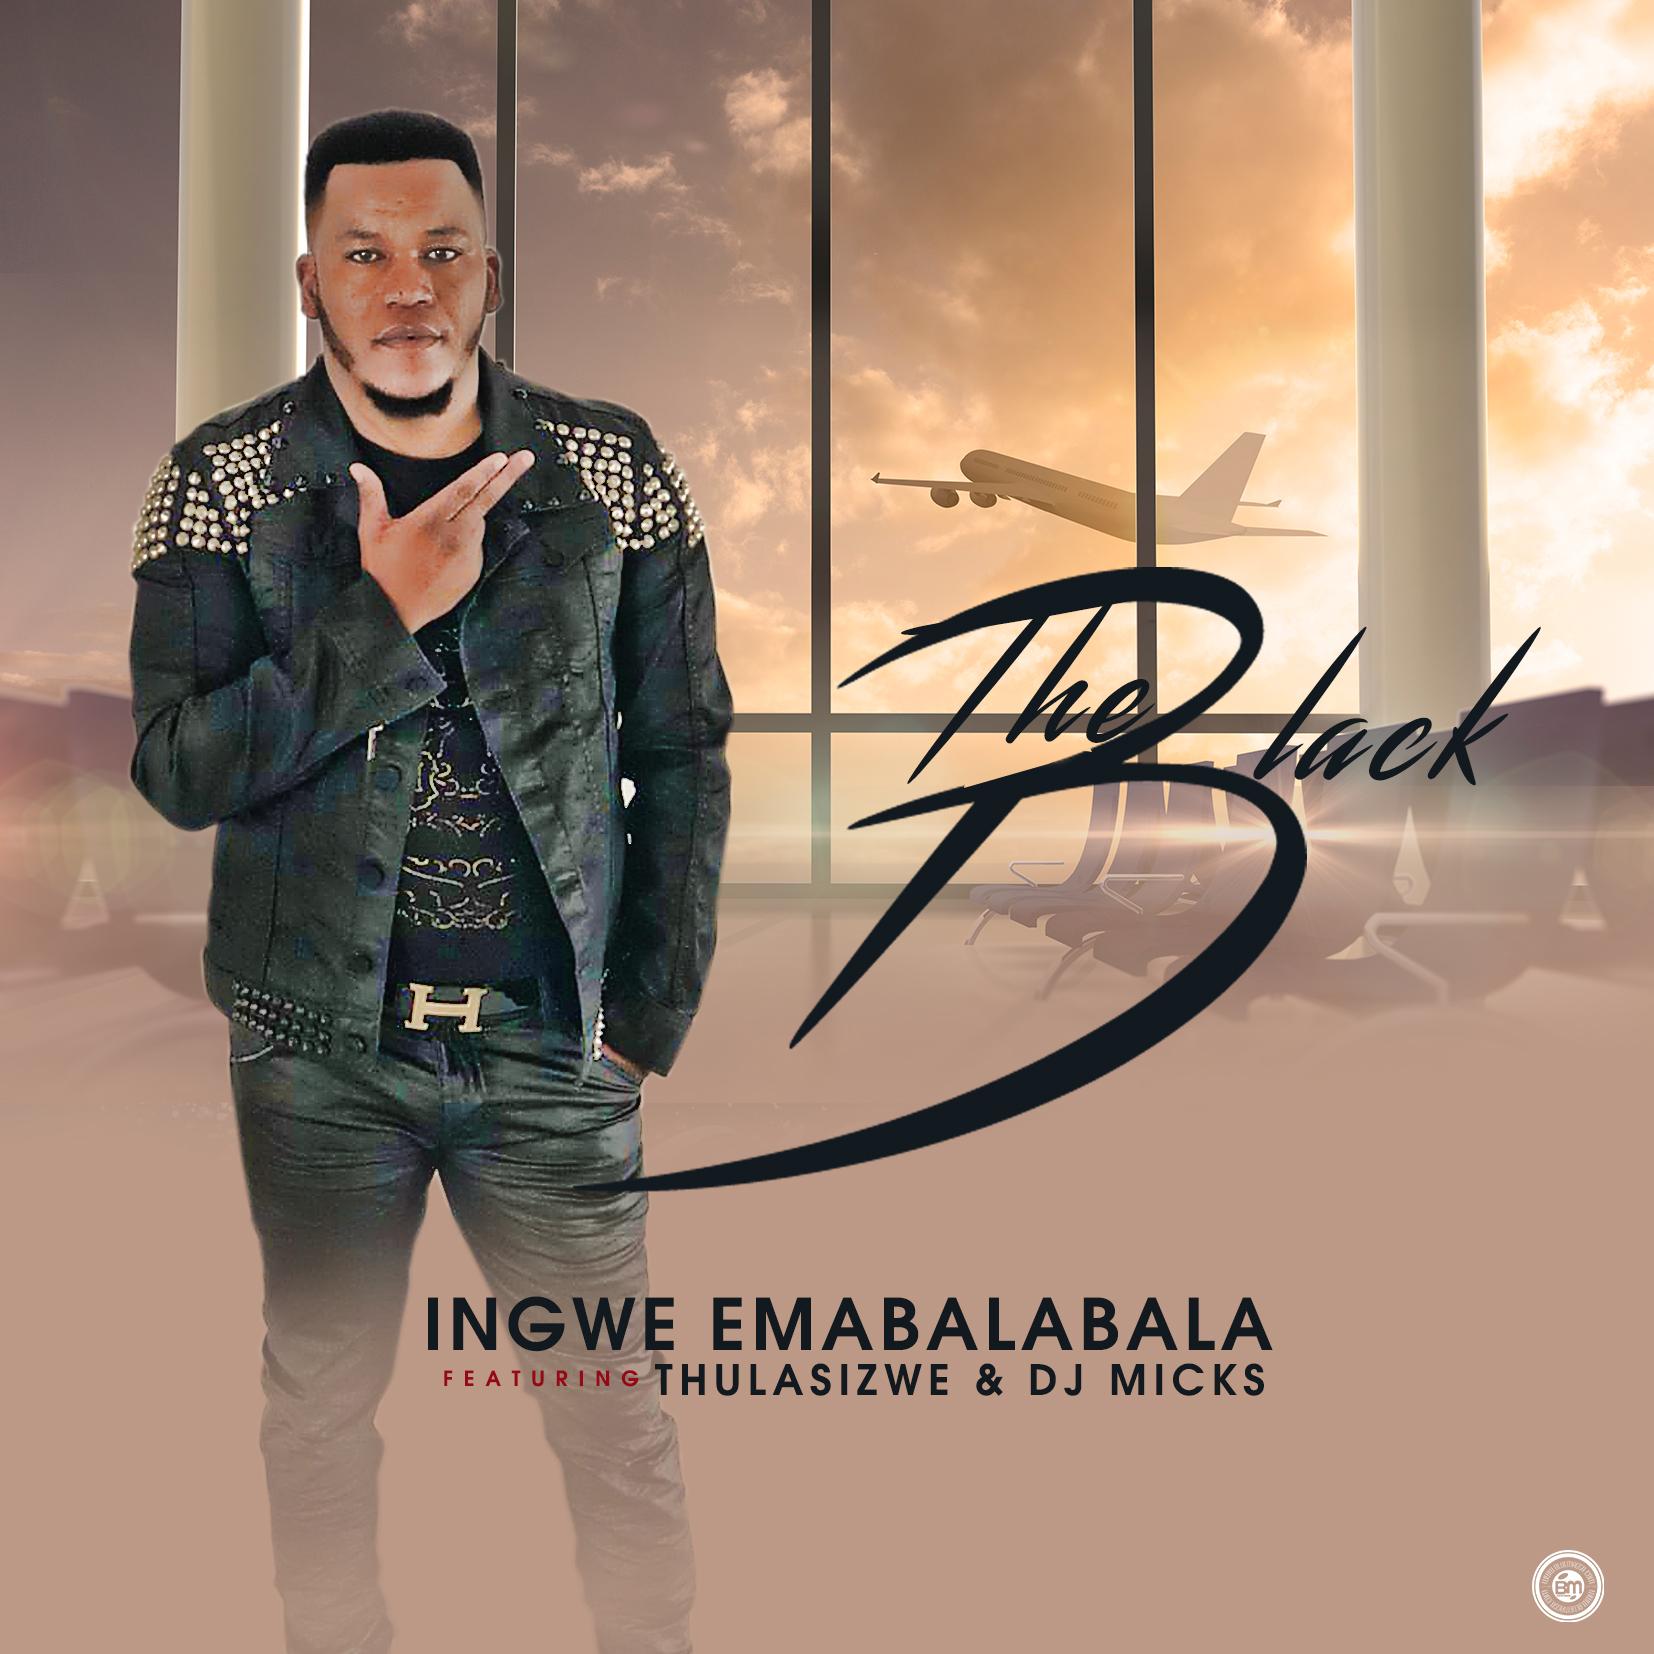 The Black ft. Thulasizwe & DJ Micks - Ingwe Emabalabala